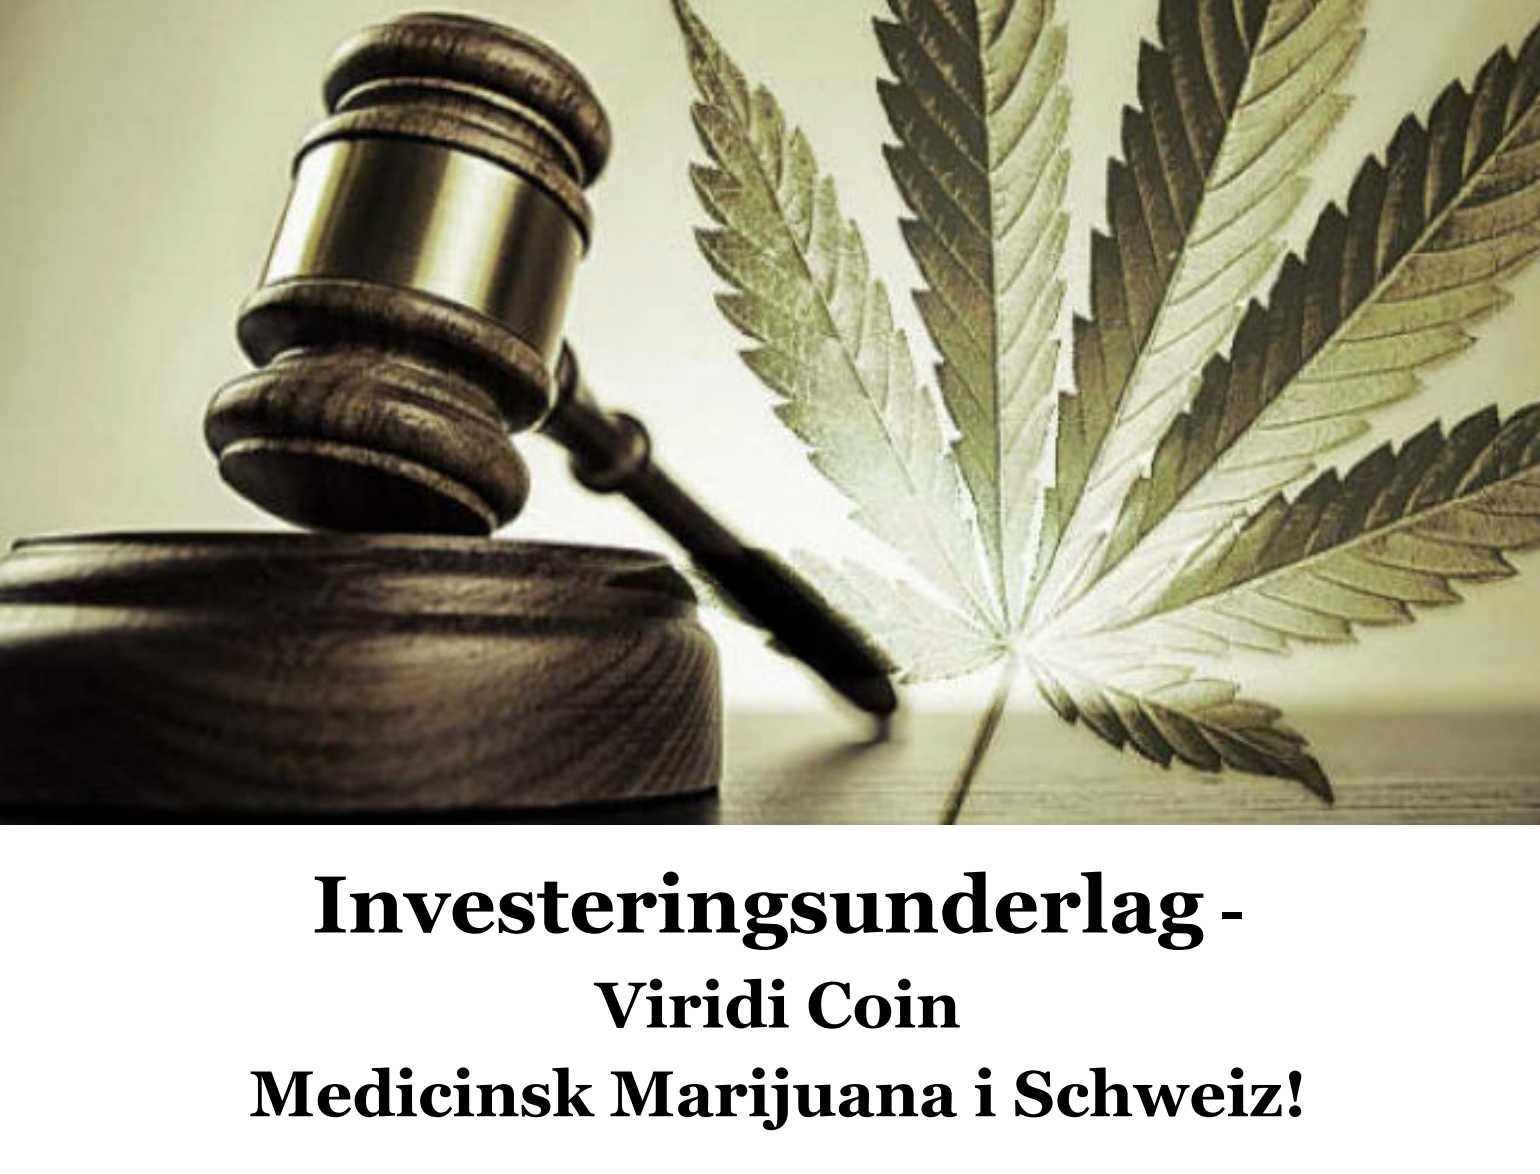 I företagets marknadsföringsmaterial beskrivs medicinsk cannabis som en mycket trygg och lukrativ investering. 